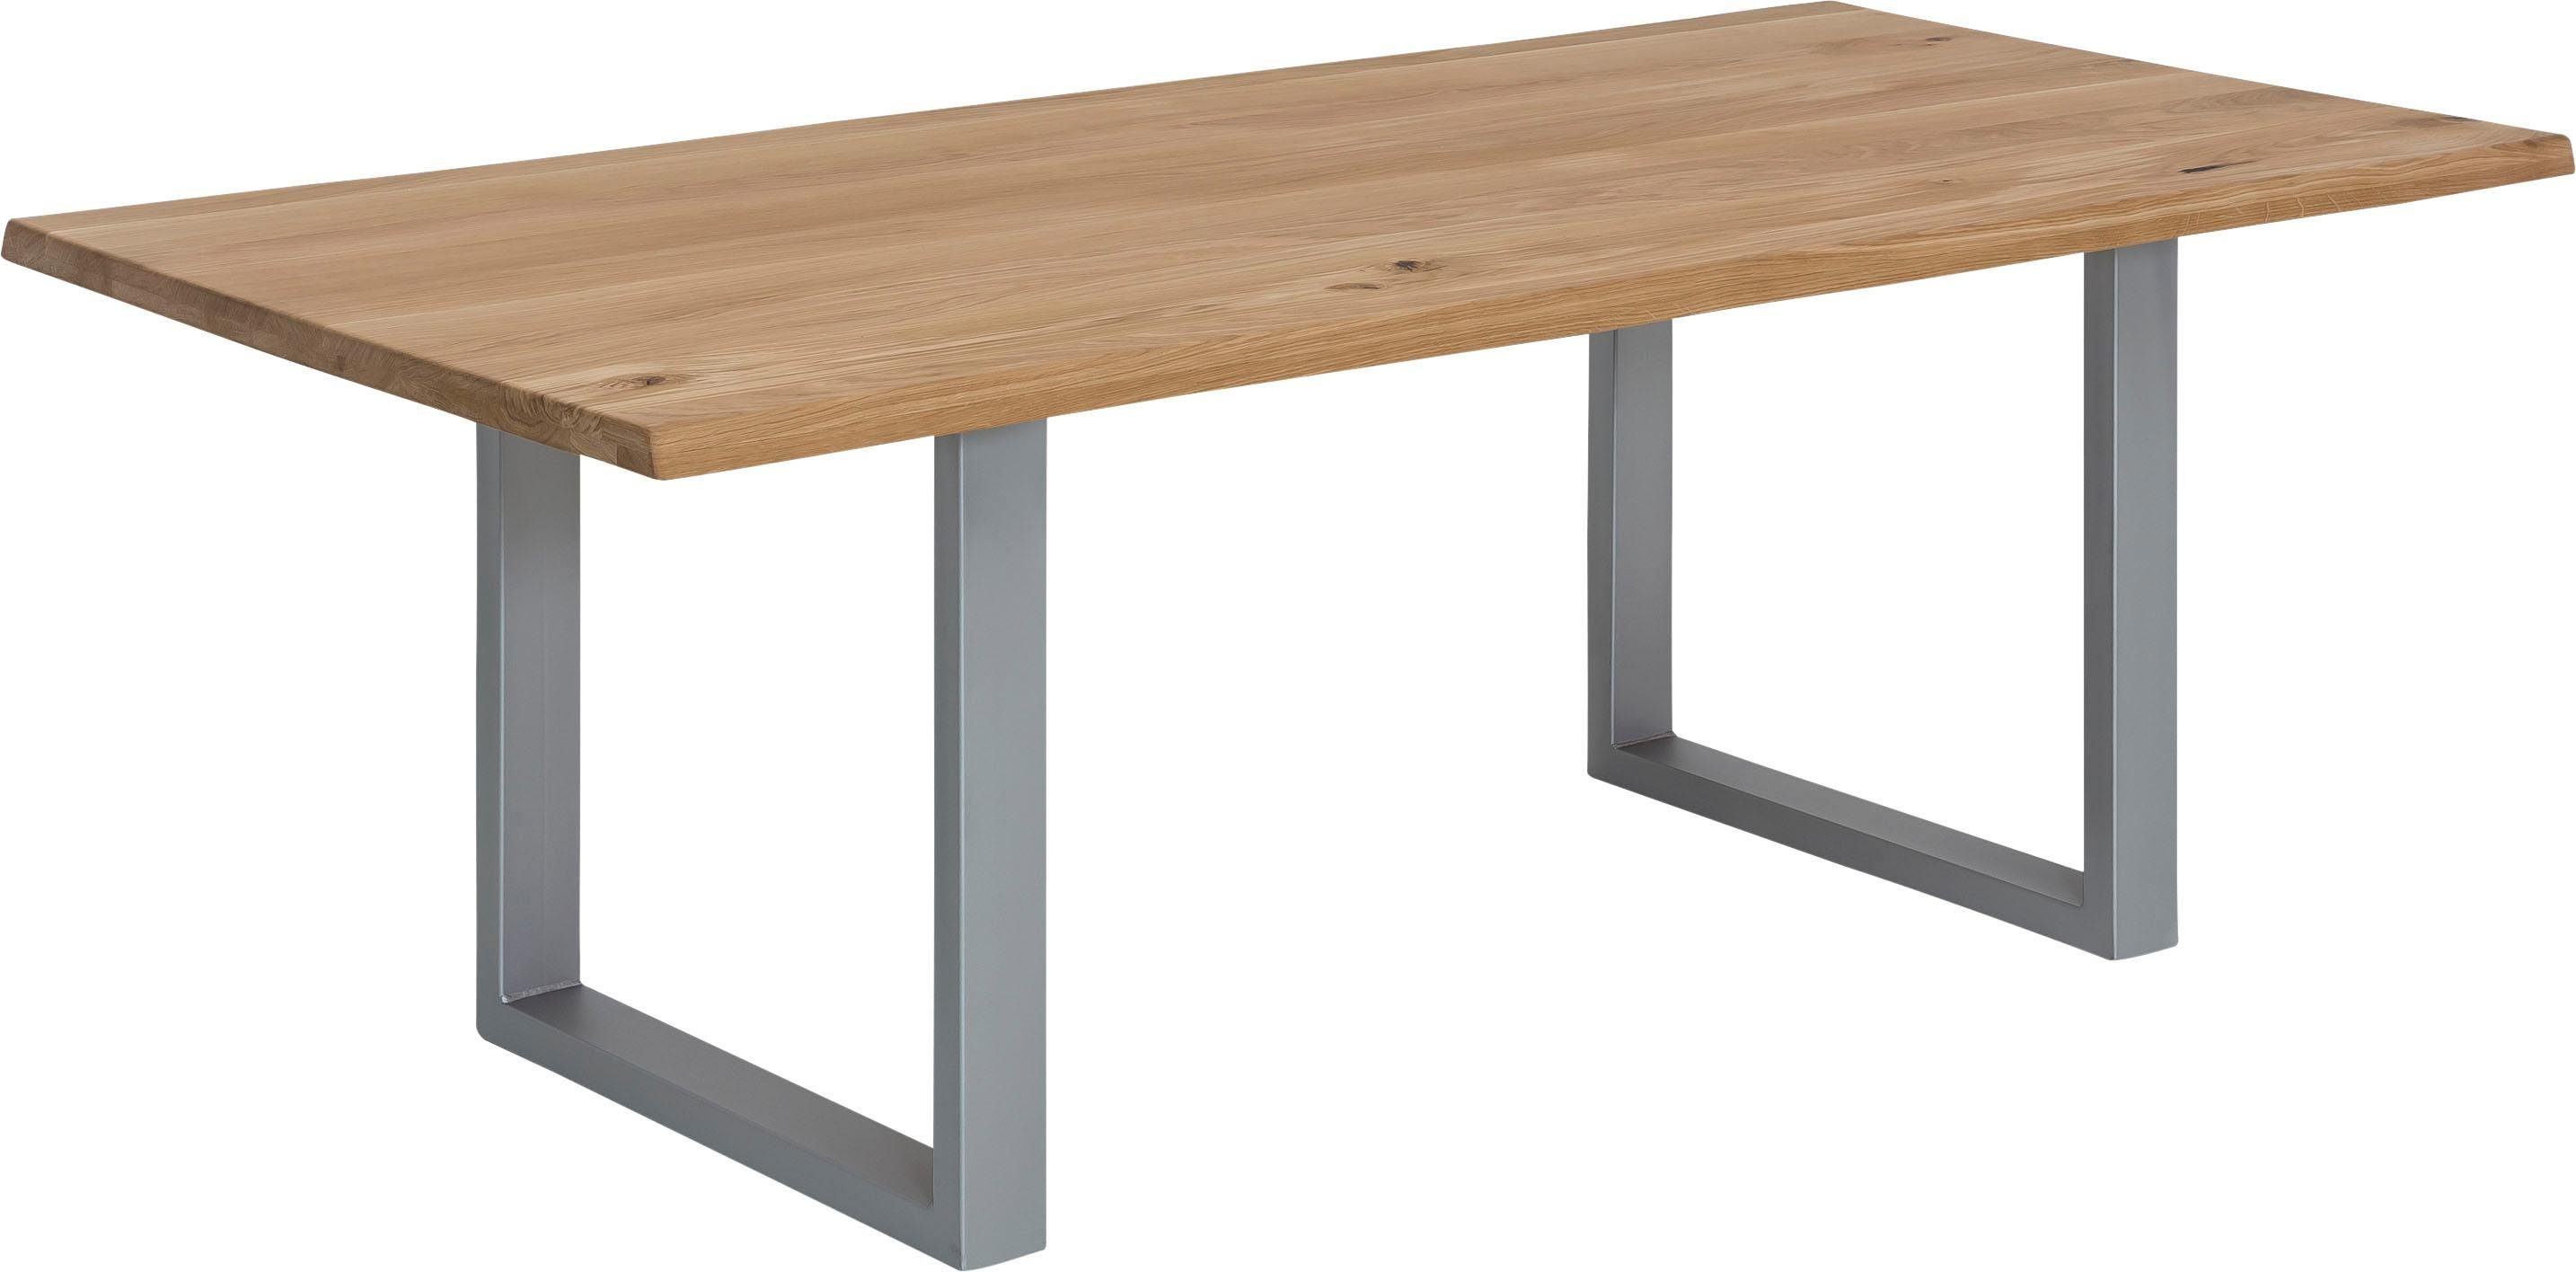 SIT Esstisch »Tops&Tables«, mit Tischplatte aus Wildeiche, mit Baumkante wie gewachsen, Shabby Chic, Vintage-Otto